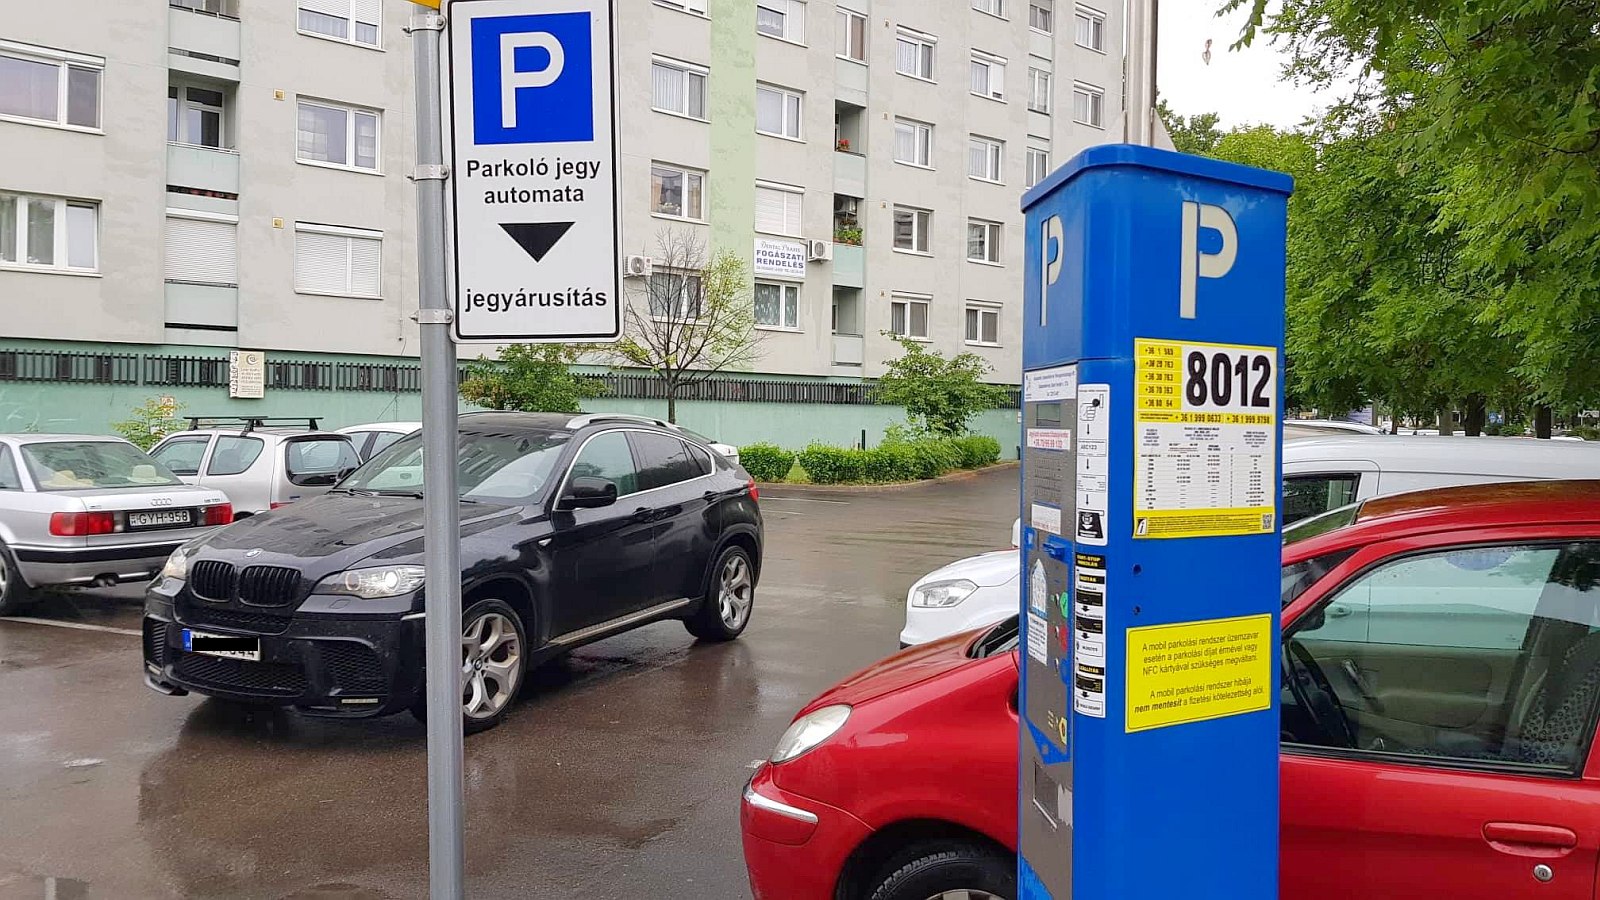 Jövő héten keddtől ismét fizetős lesz a parkolás – székesfehérvári információk